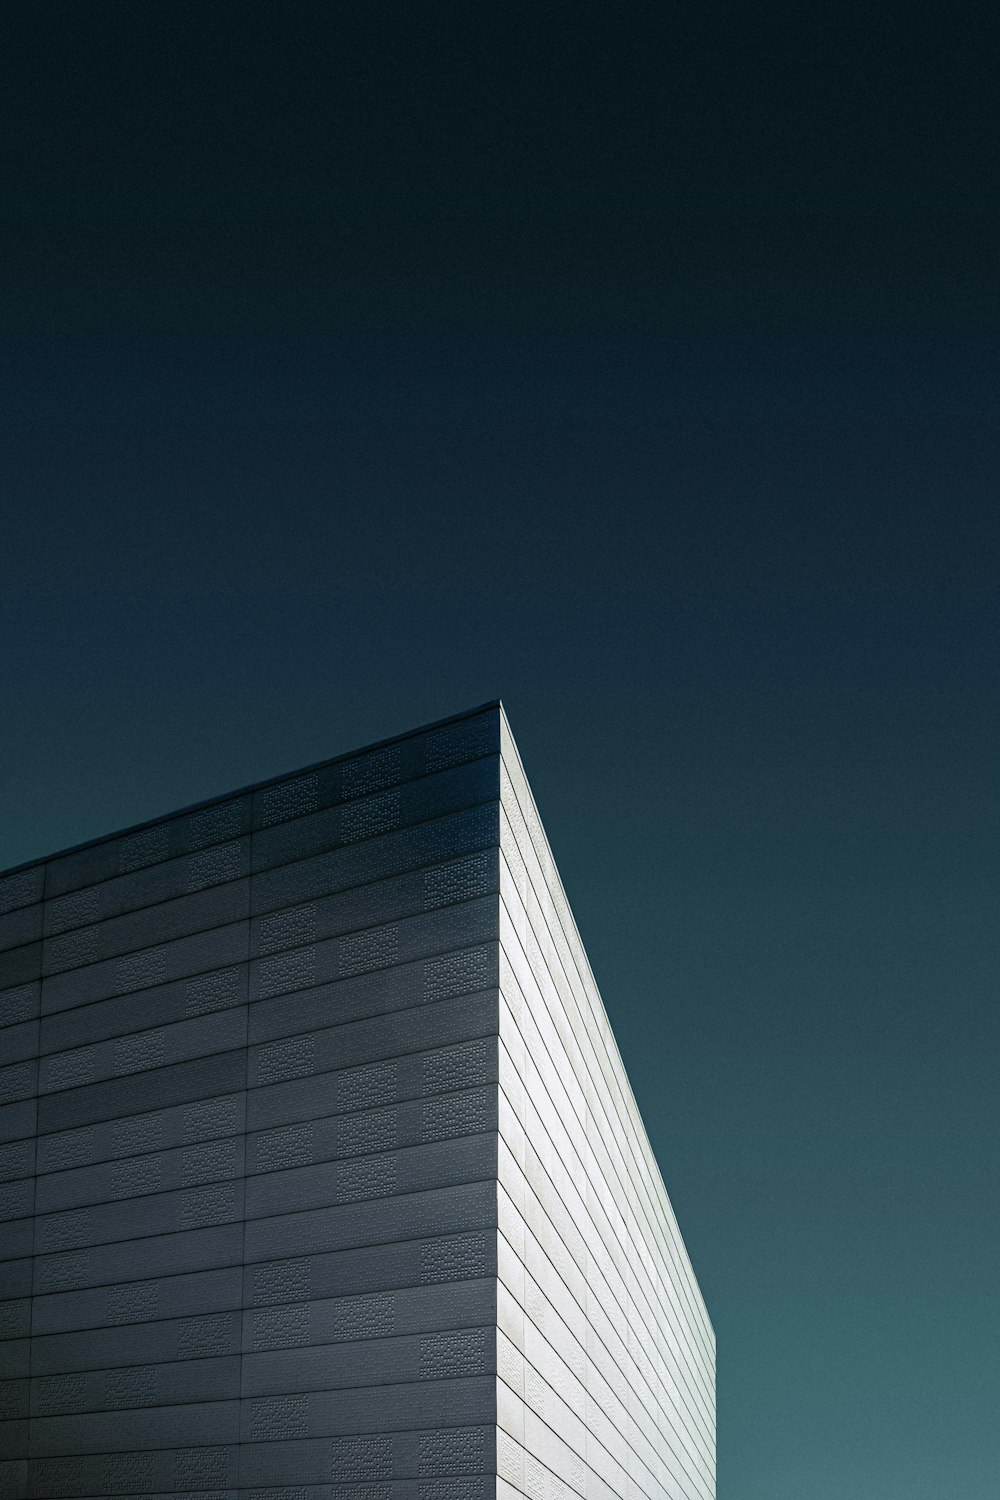 fotografia de baixo ângulo do edifício de concreto branco sob um céu azul